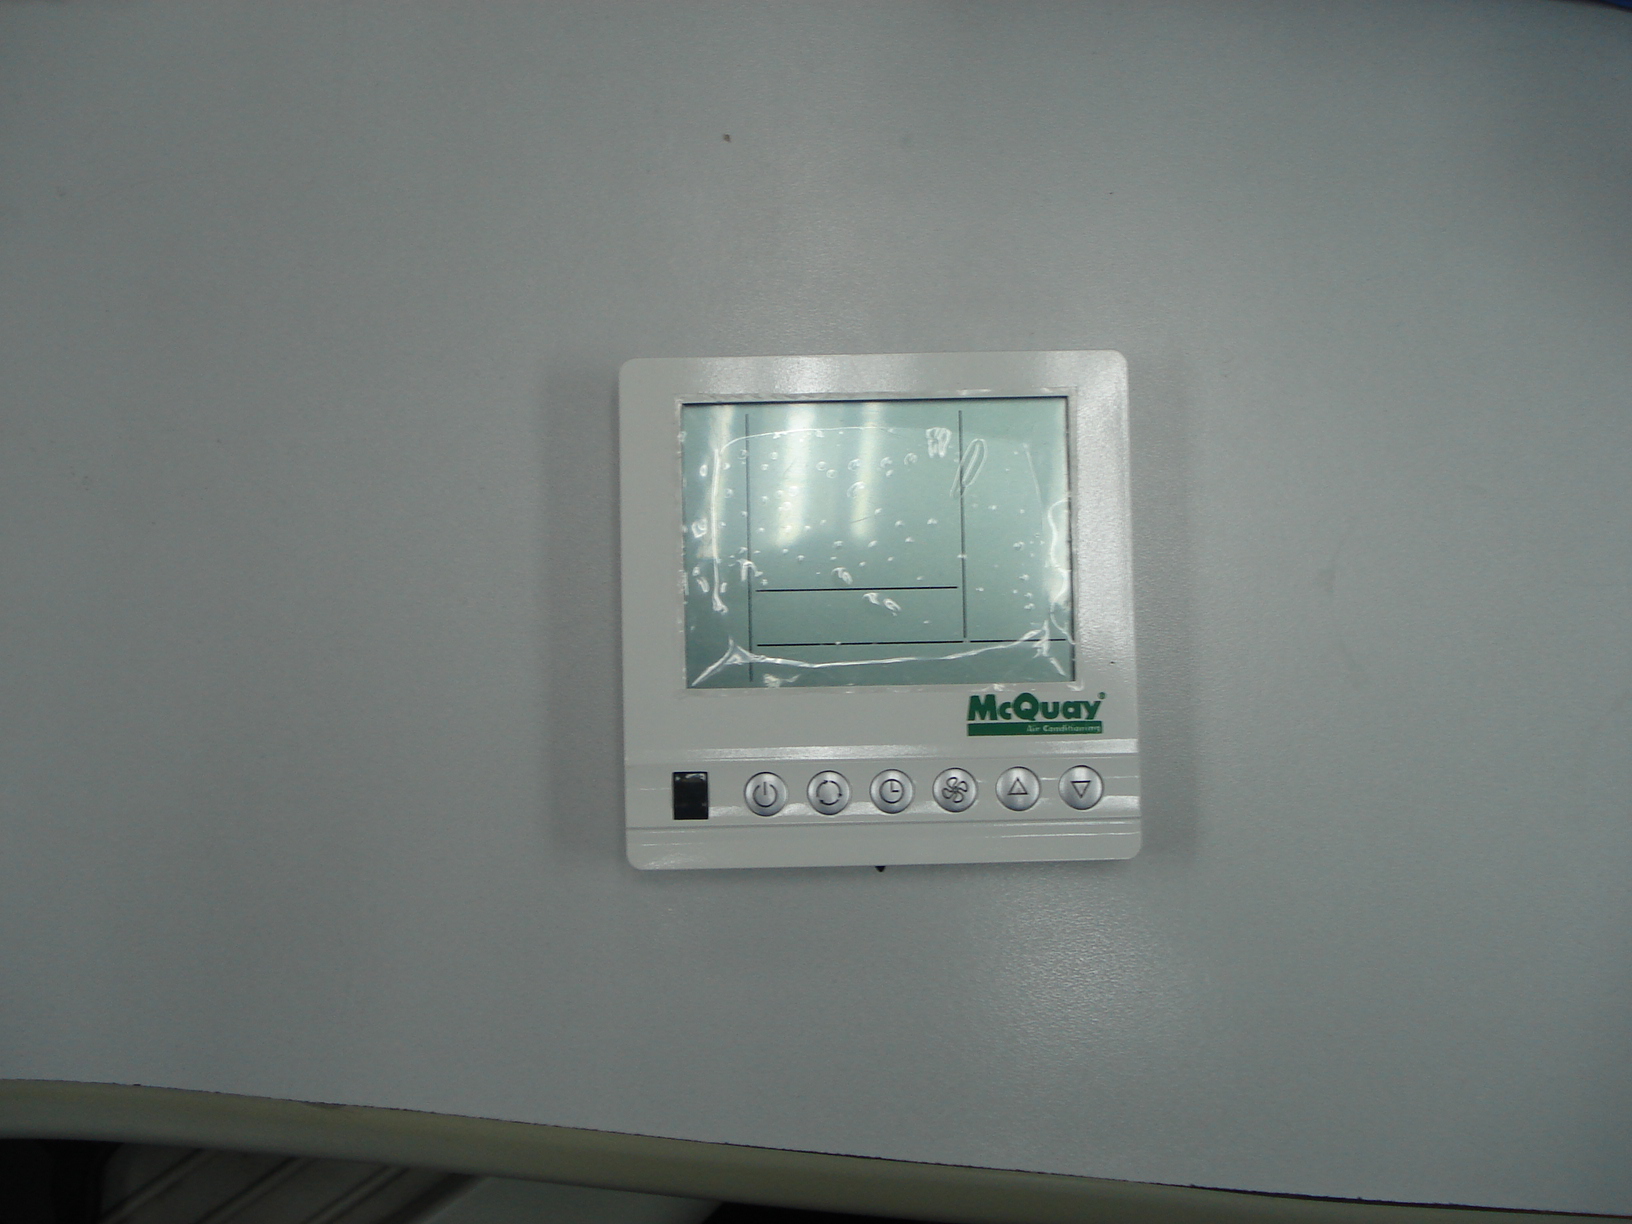 供应麦克维尔AC8100温控器/麦克维尔空调温控器AC8100/麦克维尔空调温控器/麦克维尔空调温控器价格图片